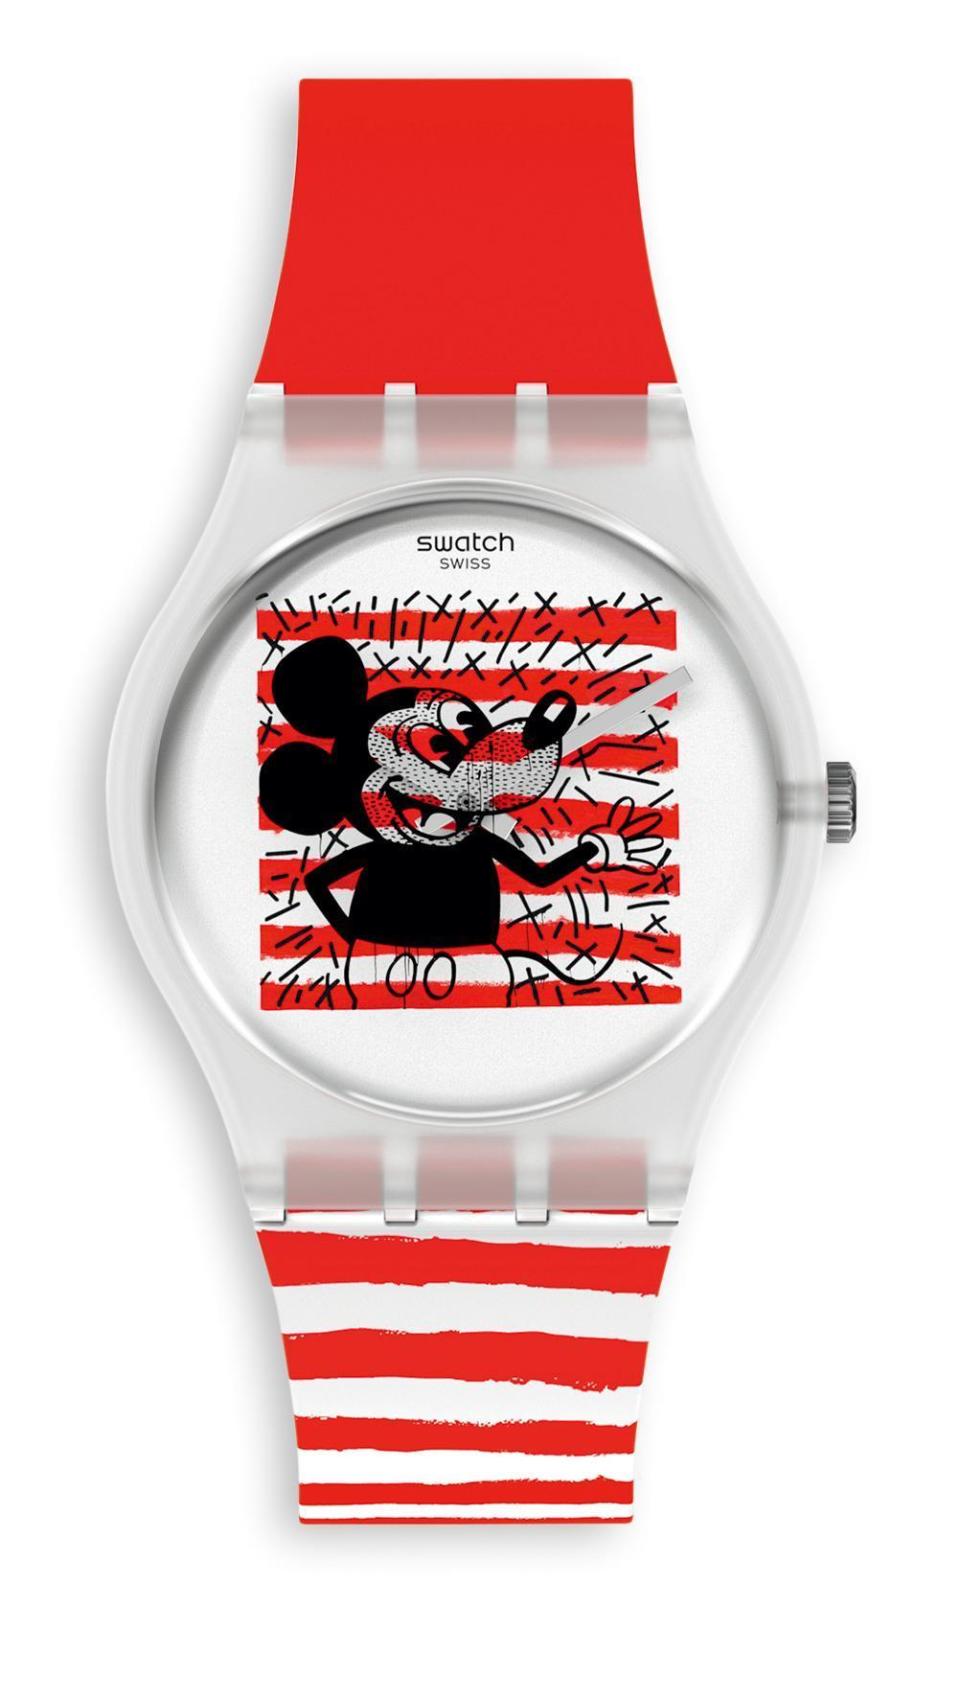 以Mickey招牌短褲為靈感泉源，錶盤上鐫刻具有Haring藝術風格的米奇形象，映襯與米奇短褲配色一致的紅白色條紋。NT$3,150。